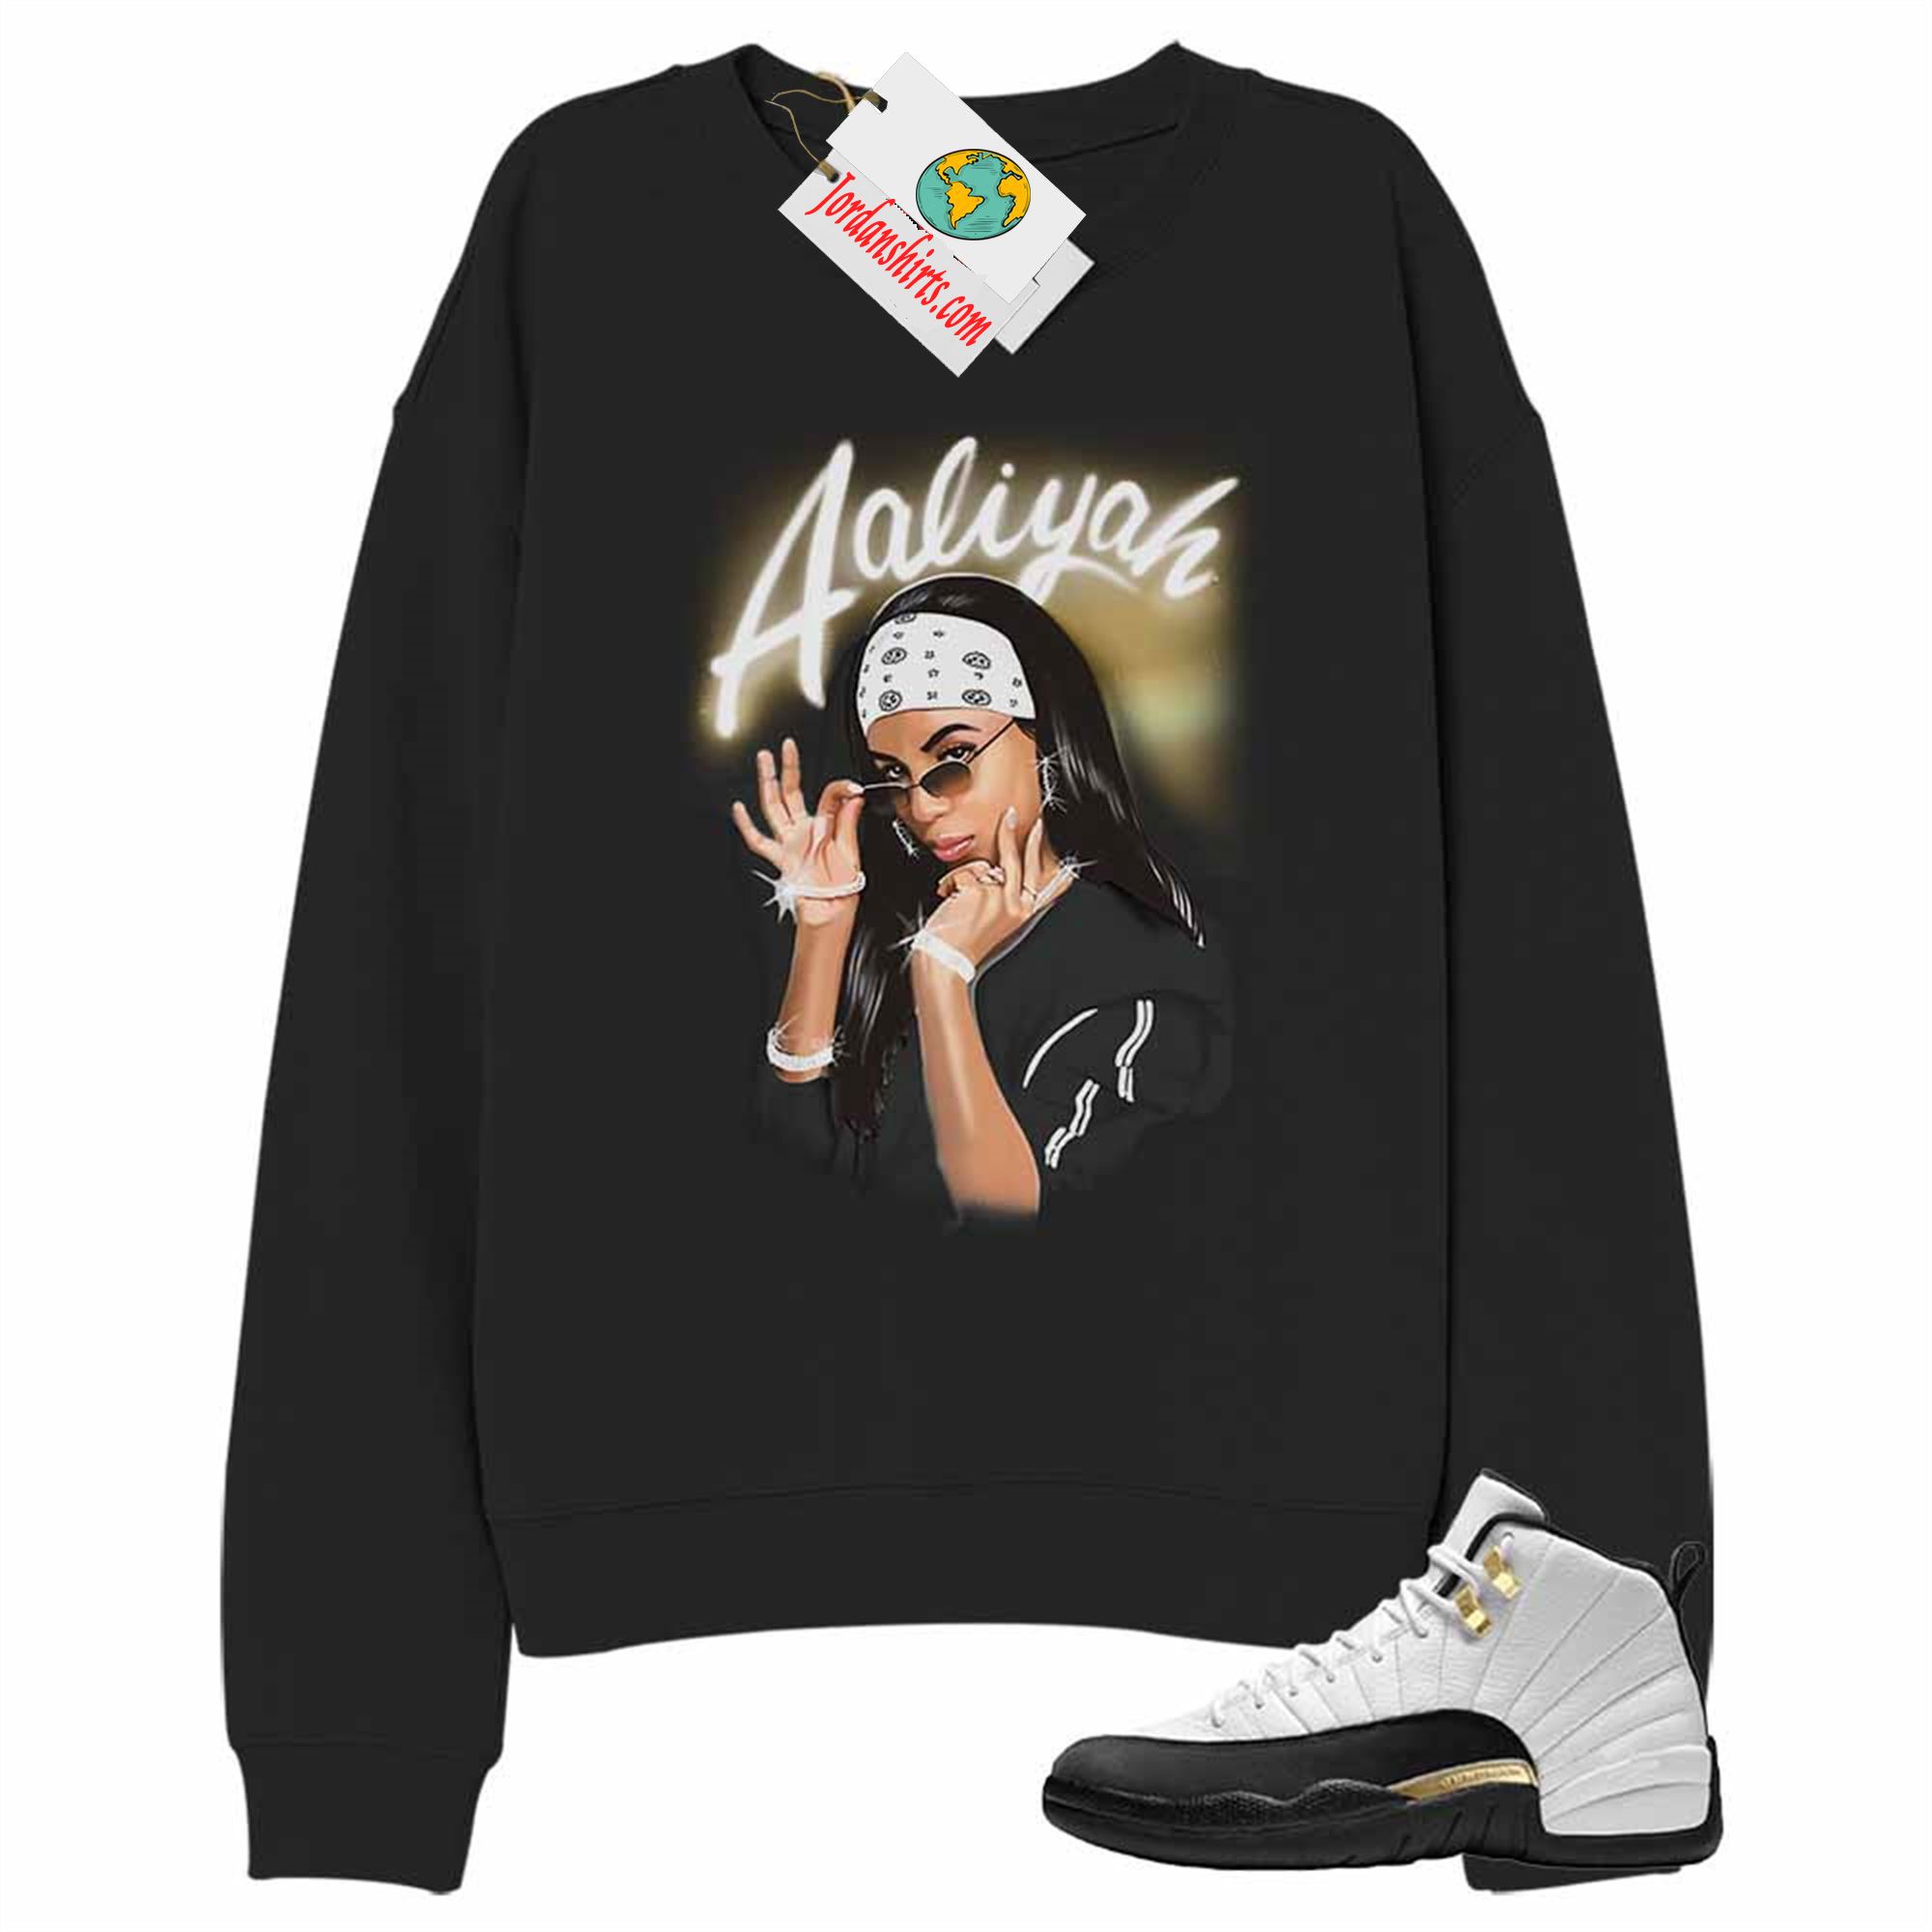 Jordan 12 Sweatshirt, Aaliyah Airbrush Black Sweatshirt Air Jordan 12 Royalty 12s Size Up To 5xl